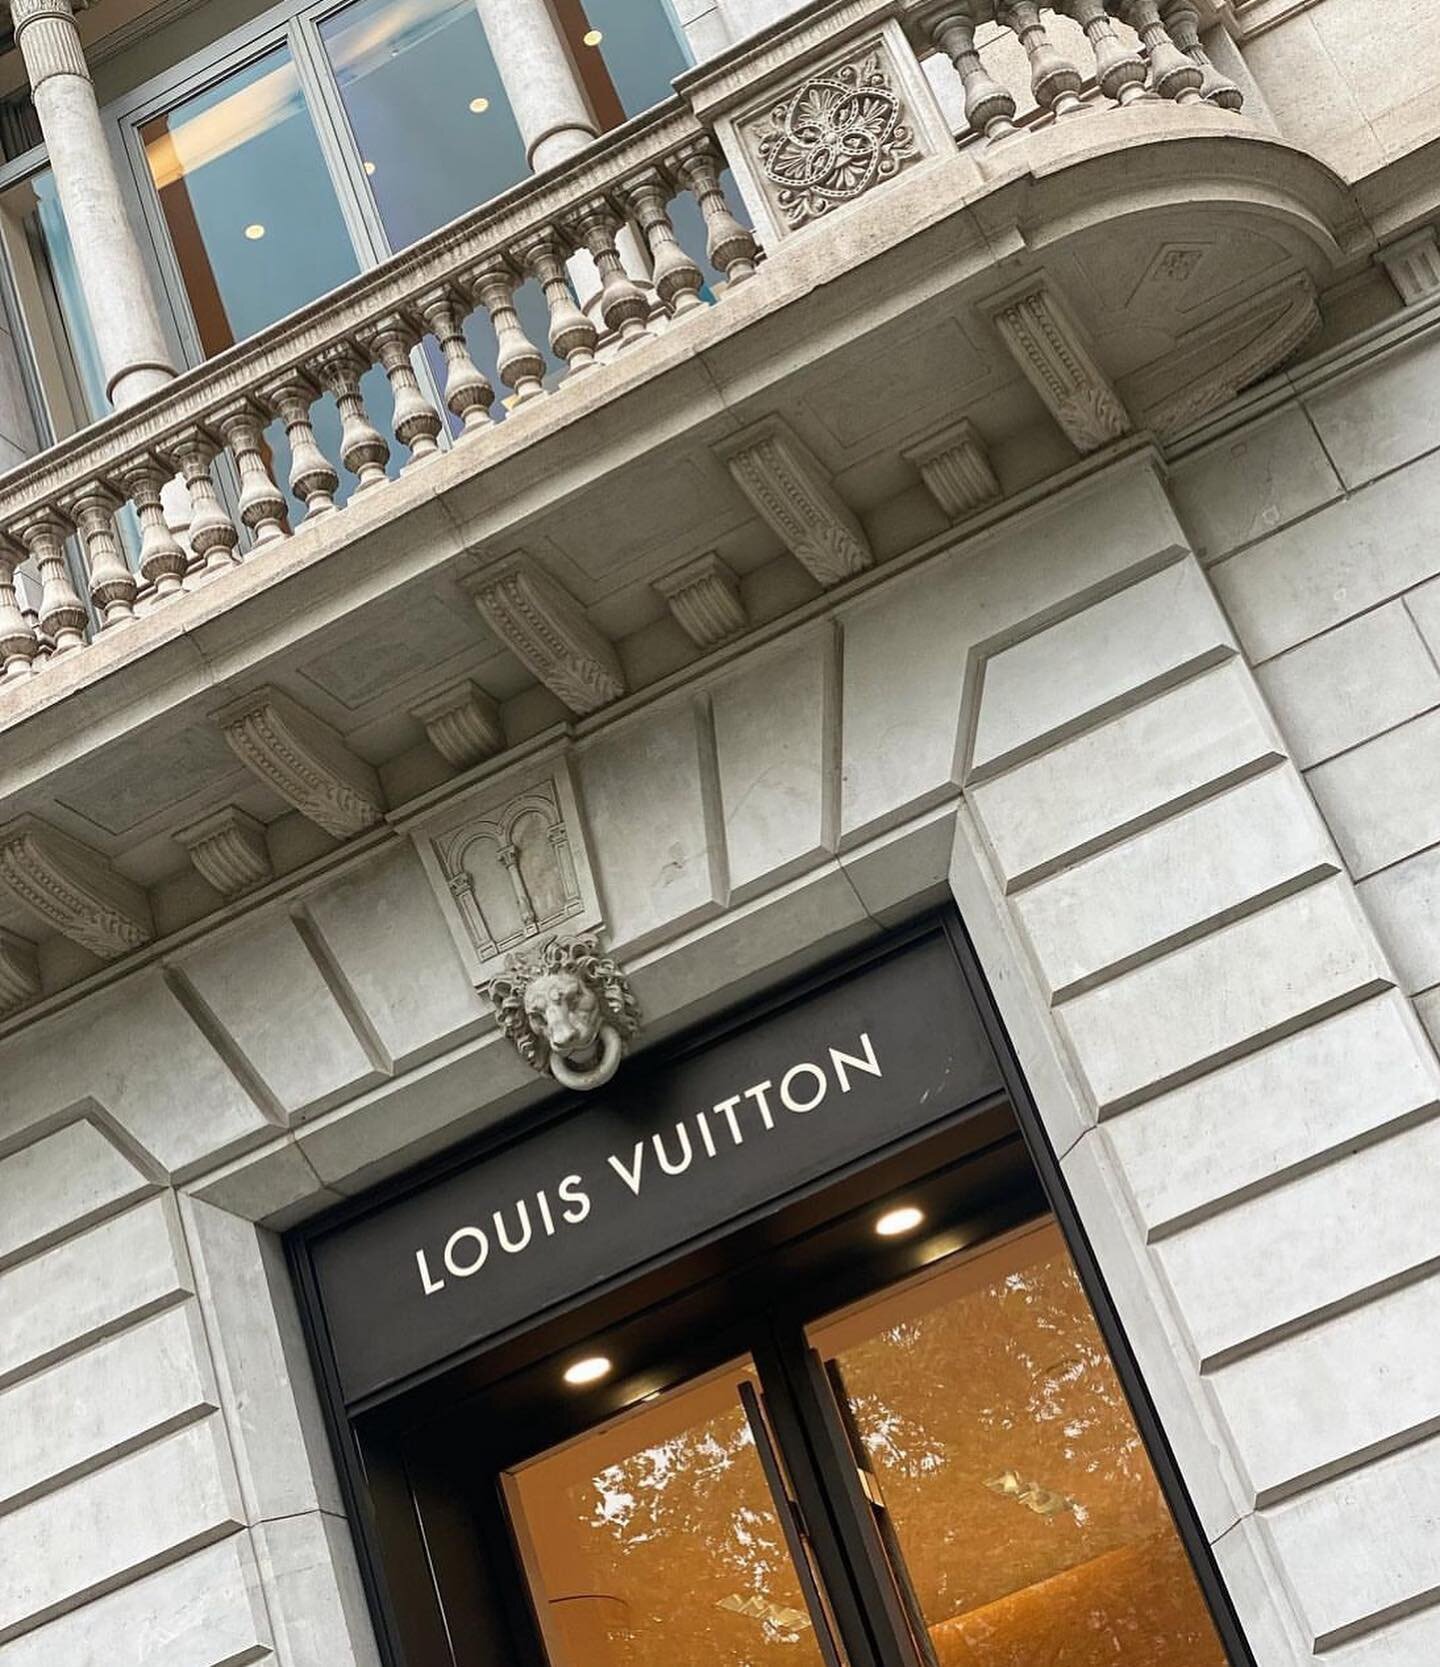 Catering para Louis Vuitton en su tienda principal del Paseo de Gracia en Barcelona 🎄🥂✨